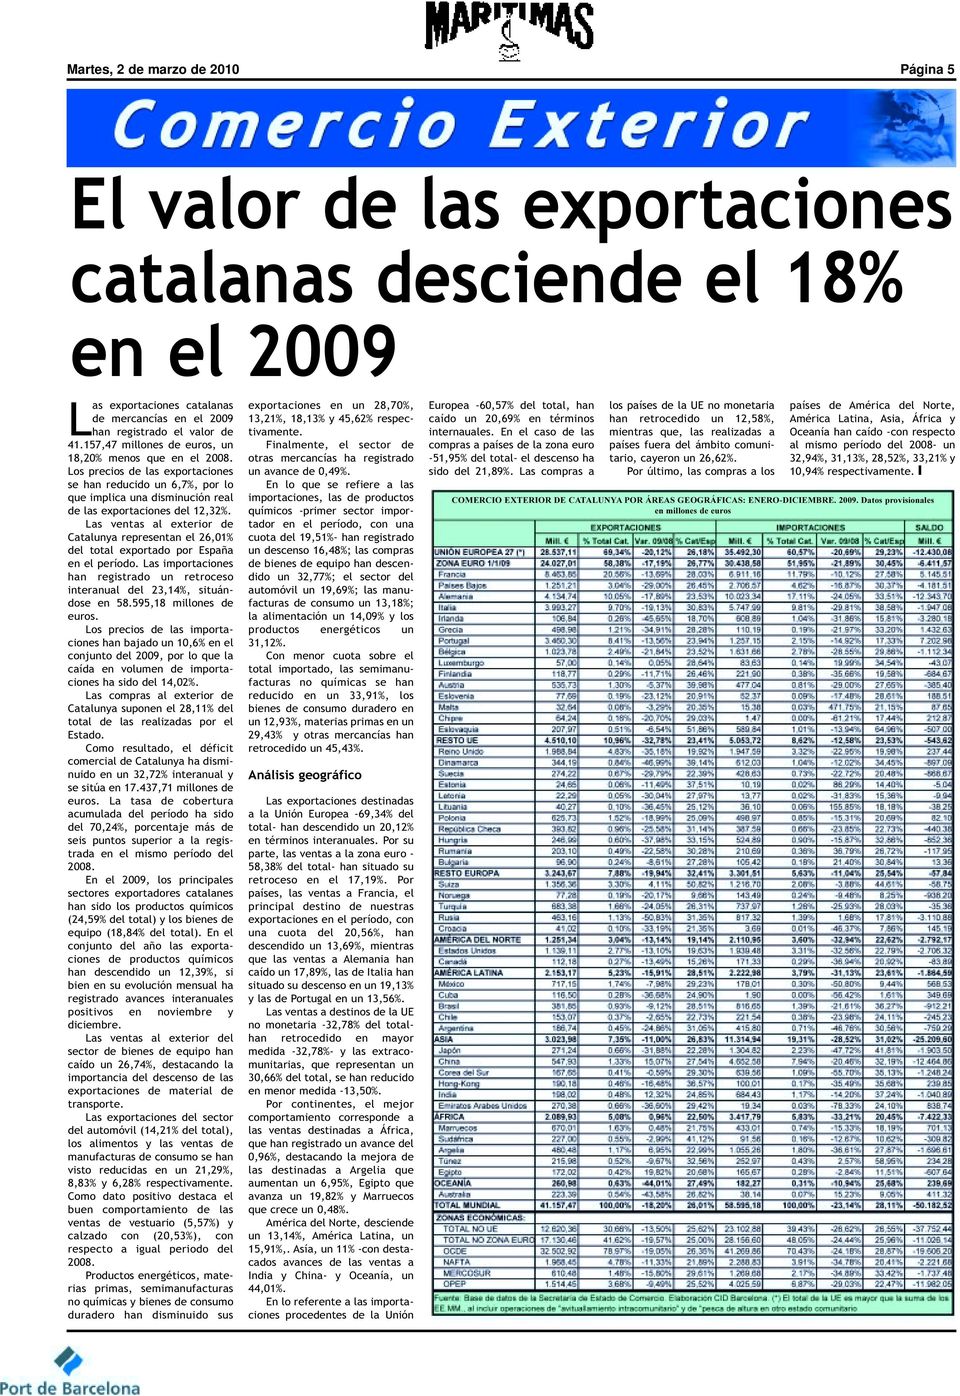 Las ventas al exterior de Catalunya representan el 26,01% del total exportado por España en el período. Las importaciones han registrado un retroceso interanual del 23,14%, situándose en 58.